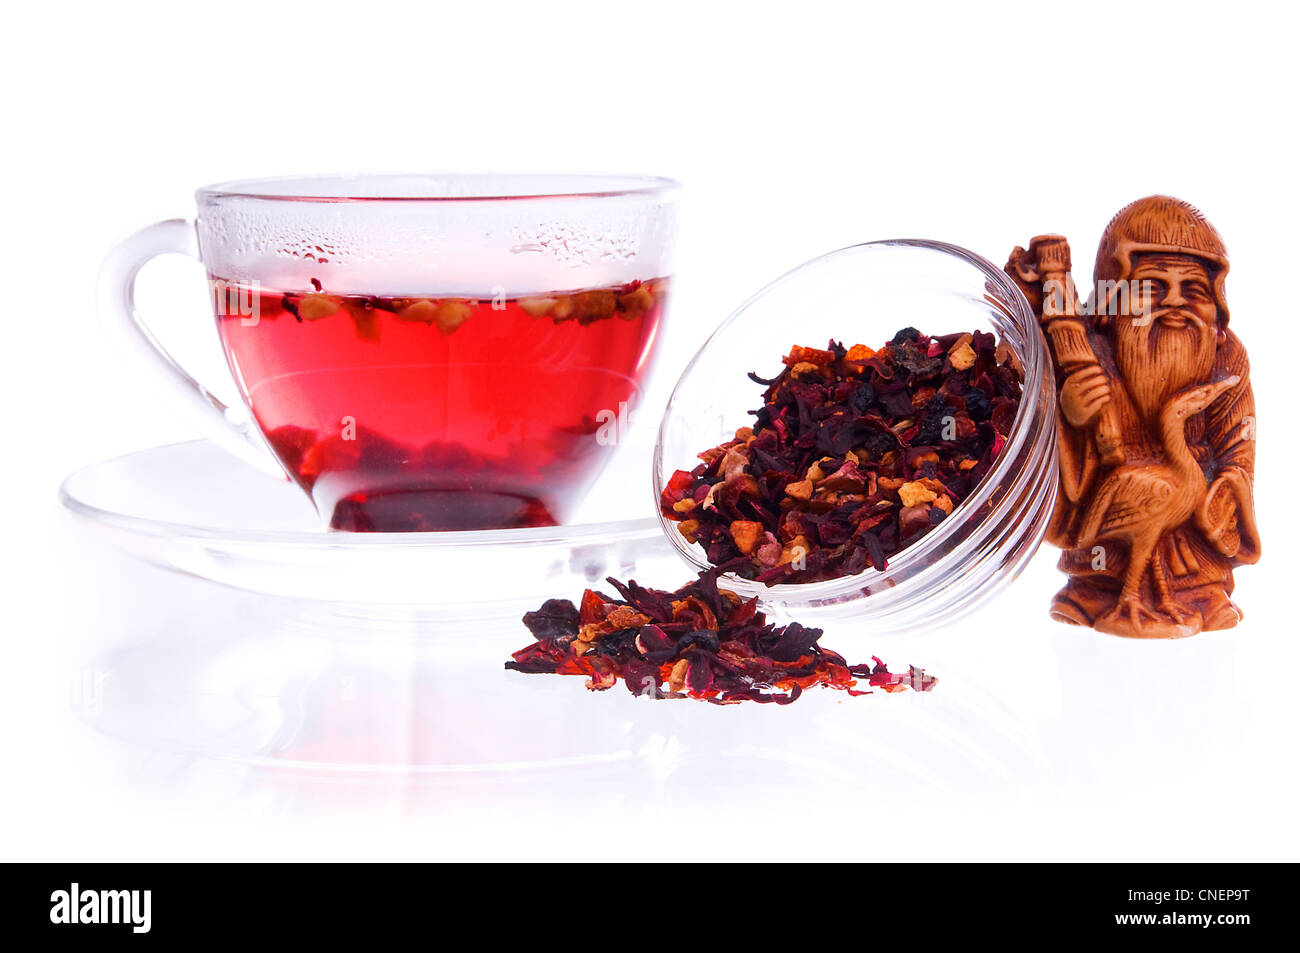 Gesundes Obst Tee in eine transparente Schale und Untertassen mit trockenen Früchtetee und Idol Wohlstand Statuette Stockfoto